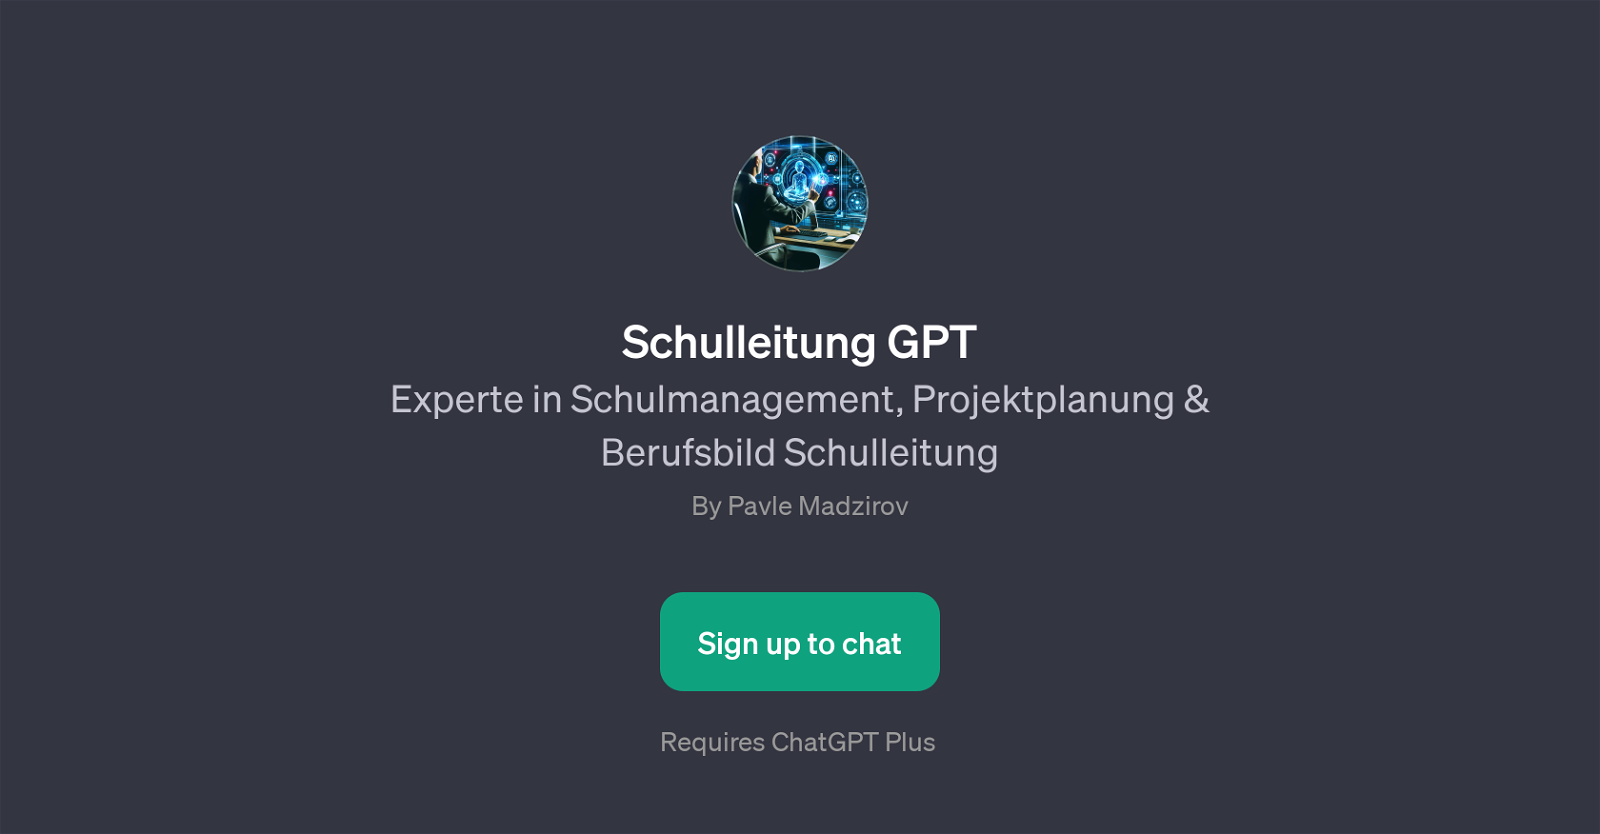 Schulleitung GPT website